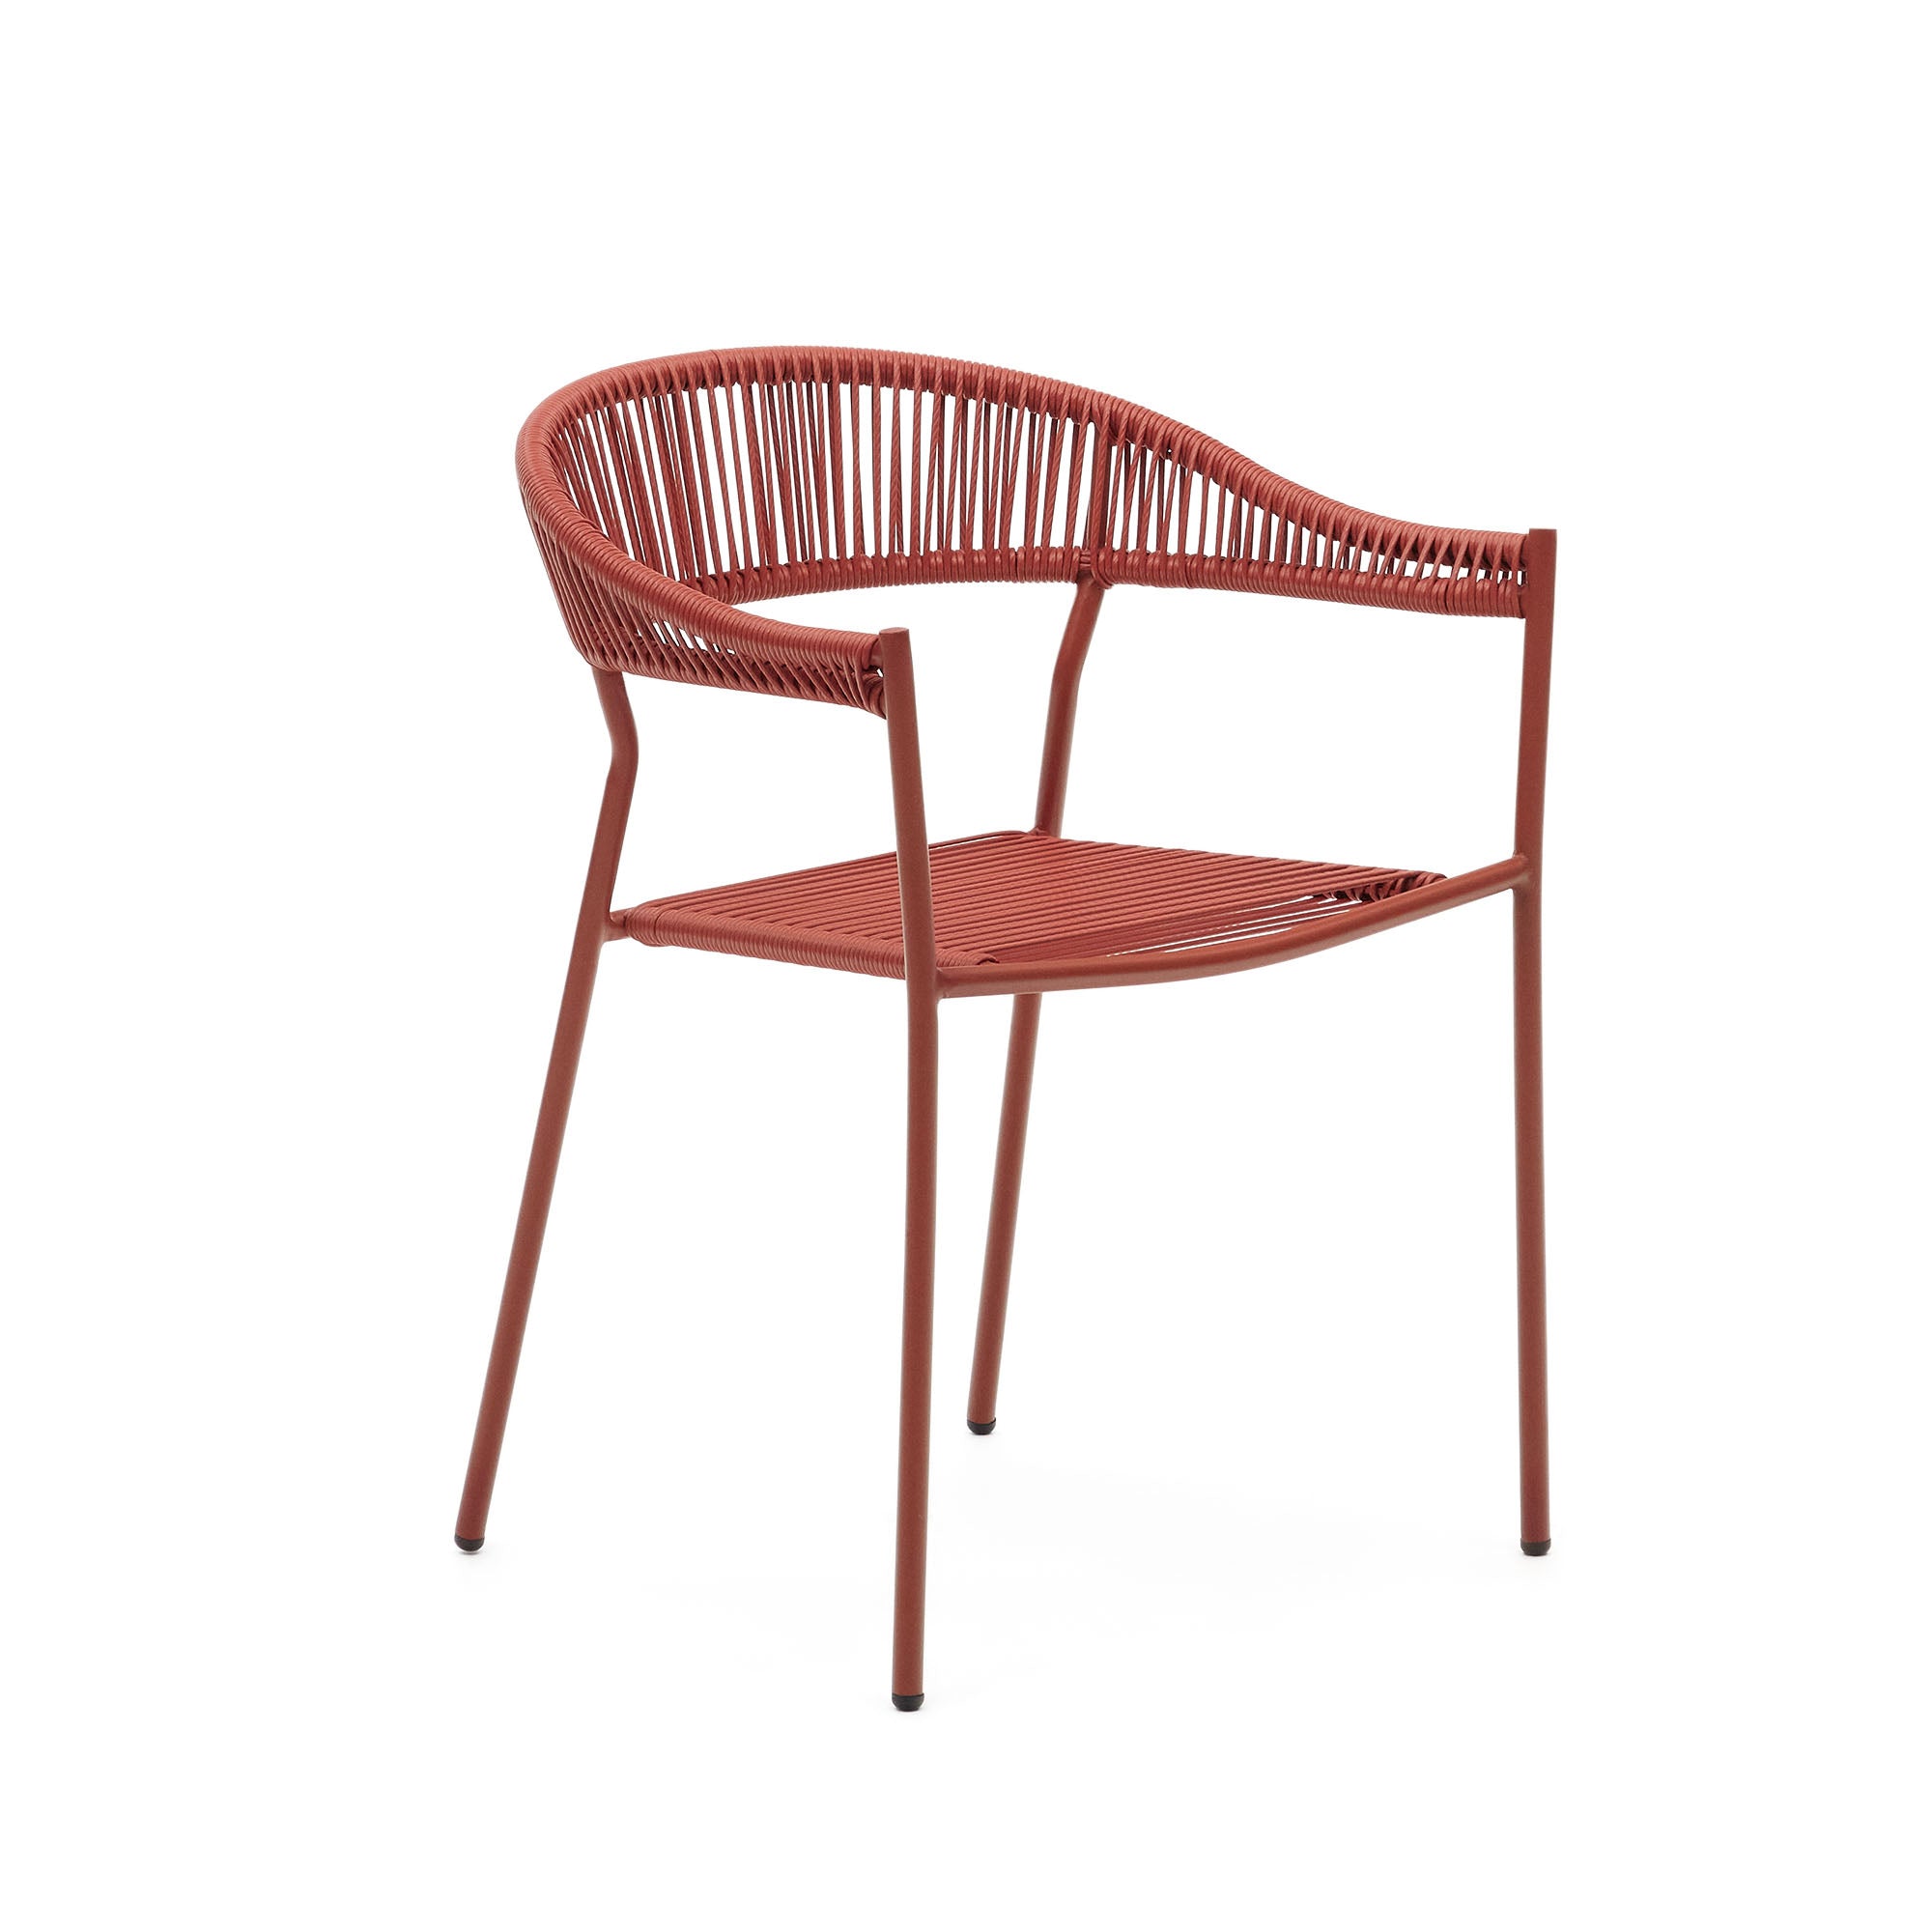 Futadera egymásba rakható kültéri szék terrakotta színű szintetikus zsinórból és terrakotta színűre festett acélból